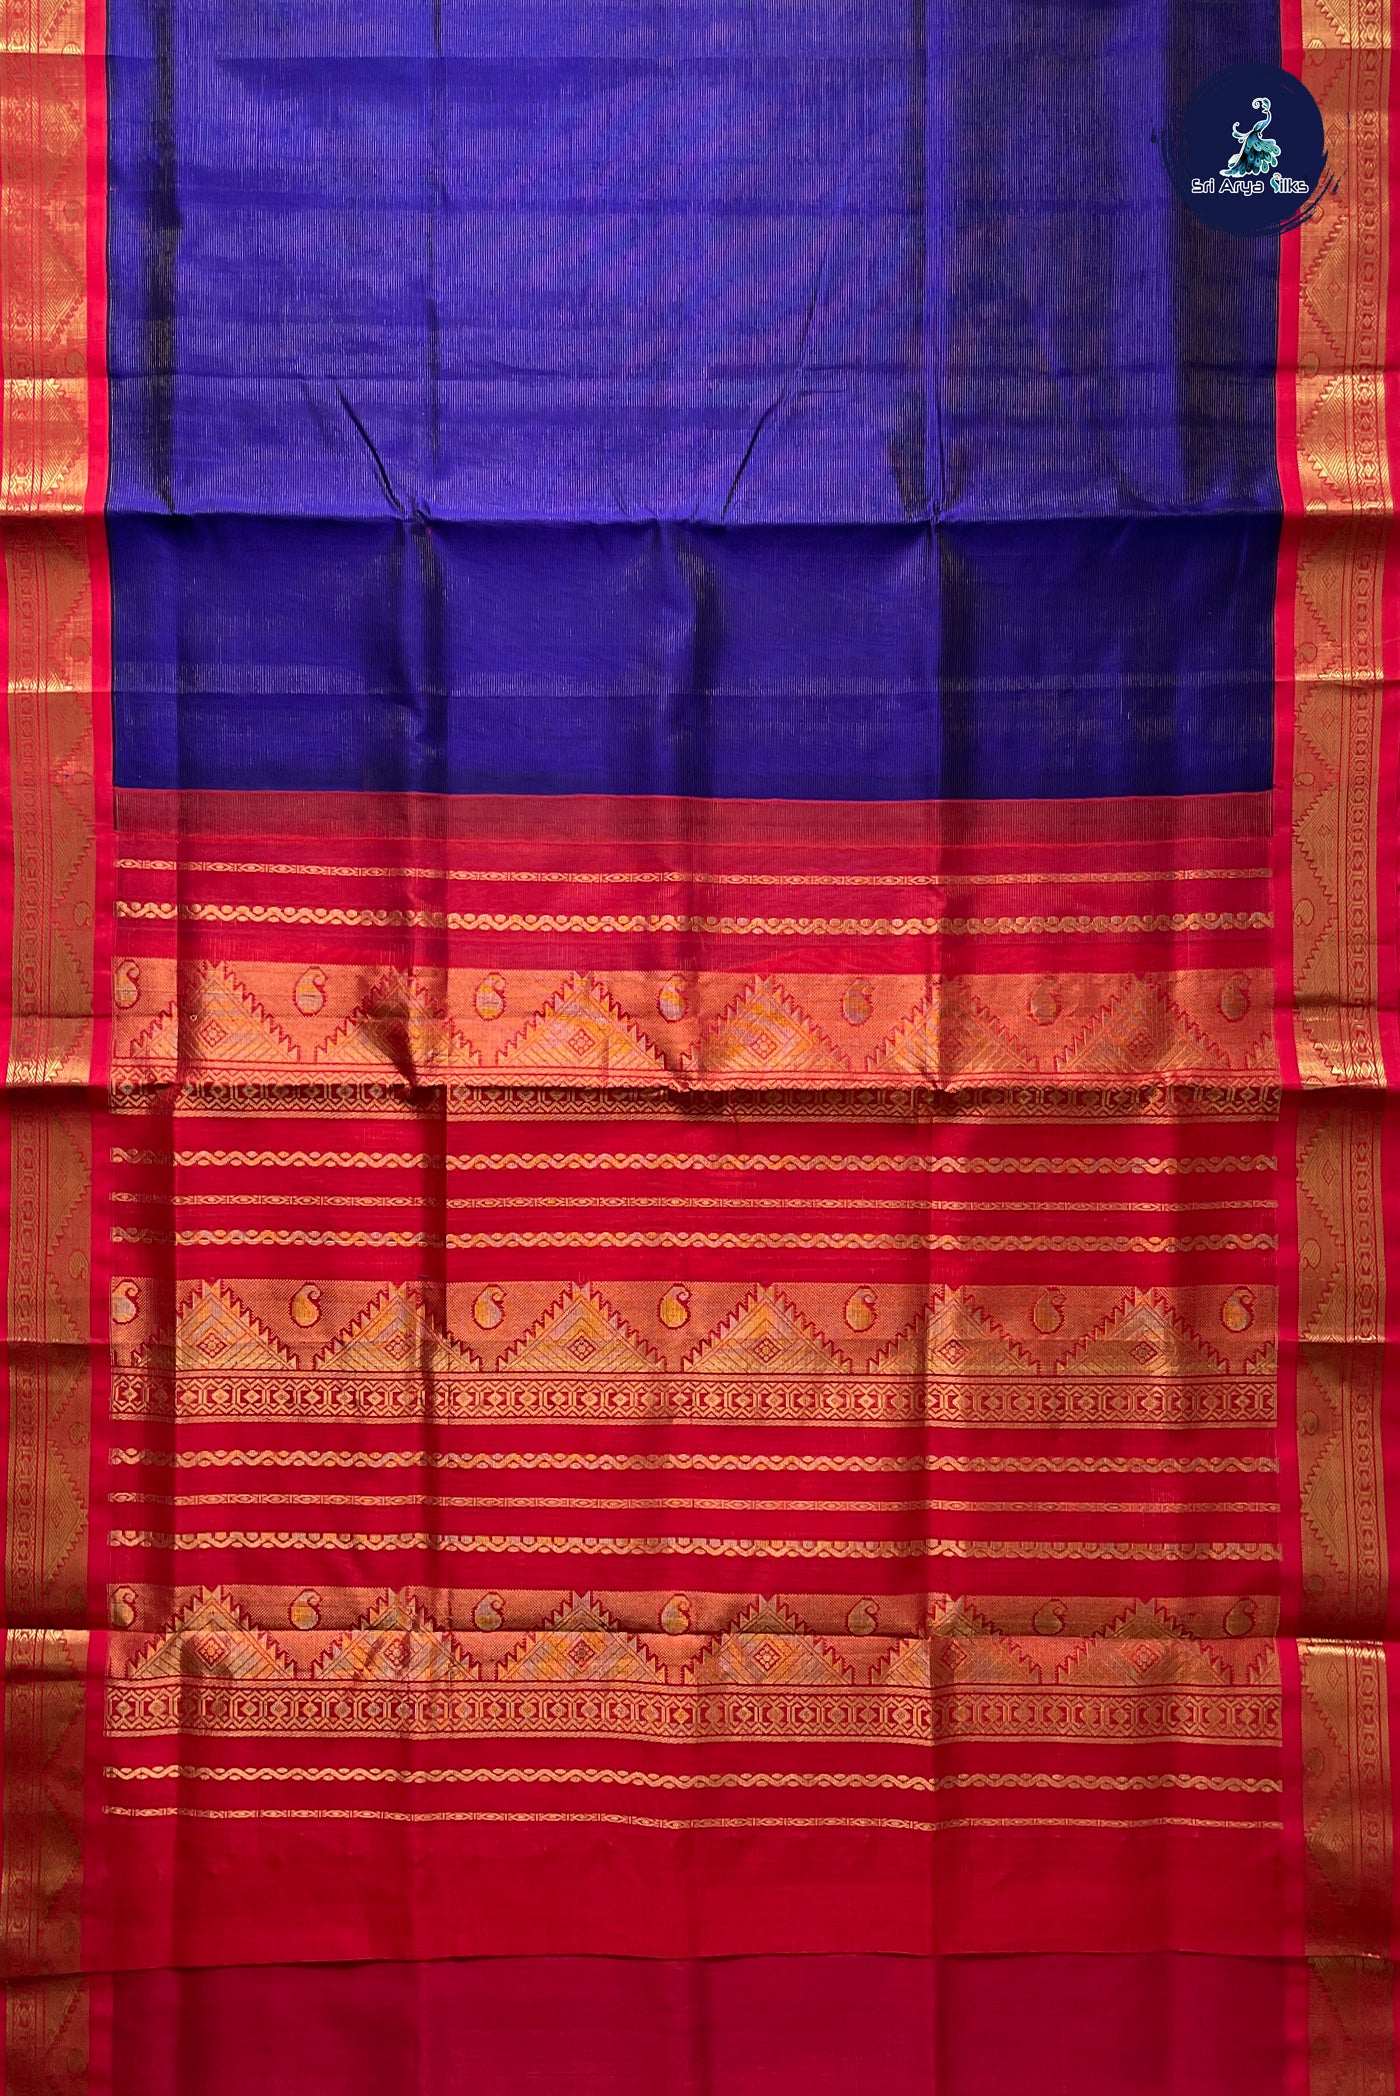 MS Blue Vaira Oosi Silk Cotton Saree With Vaira Oosi Pattern